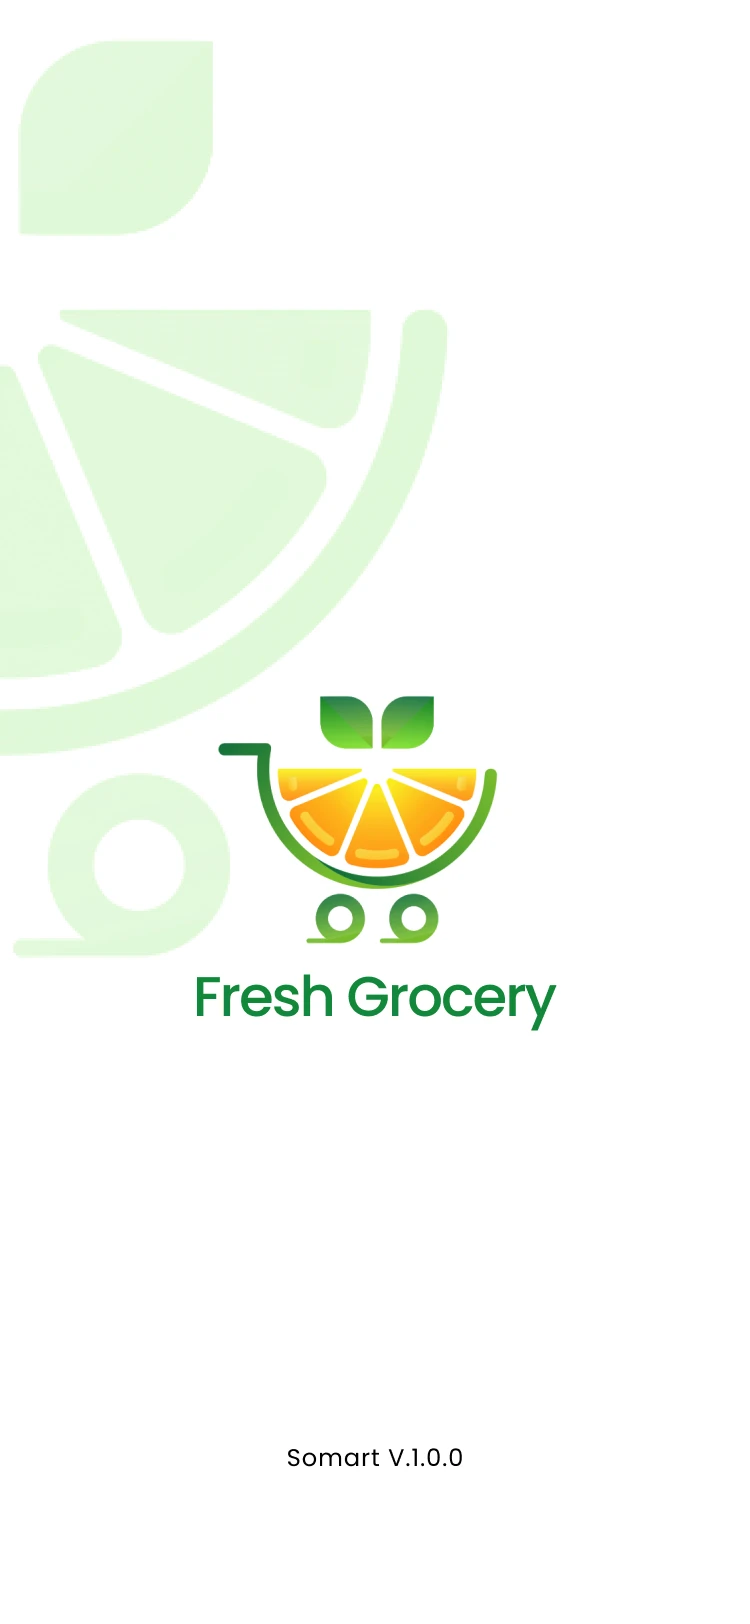 63屏蔬菜水果生鲜百货买菜配送应用UI程序UI设计套件 Fresh Grocery App Ui Kit .figma插图1